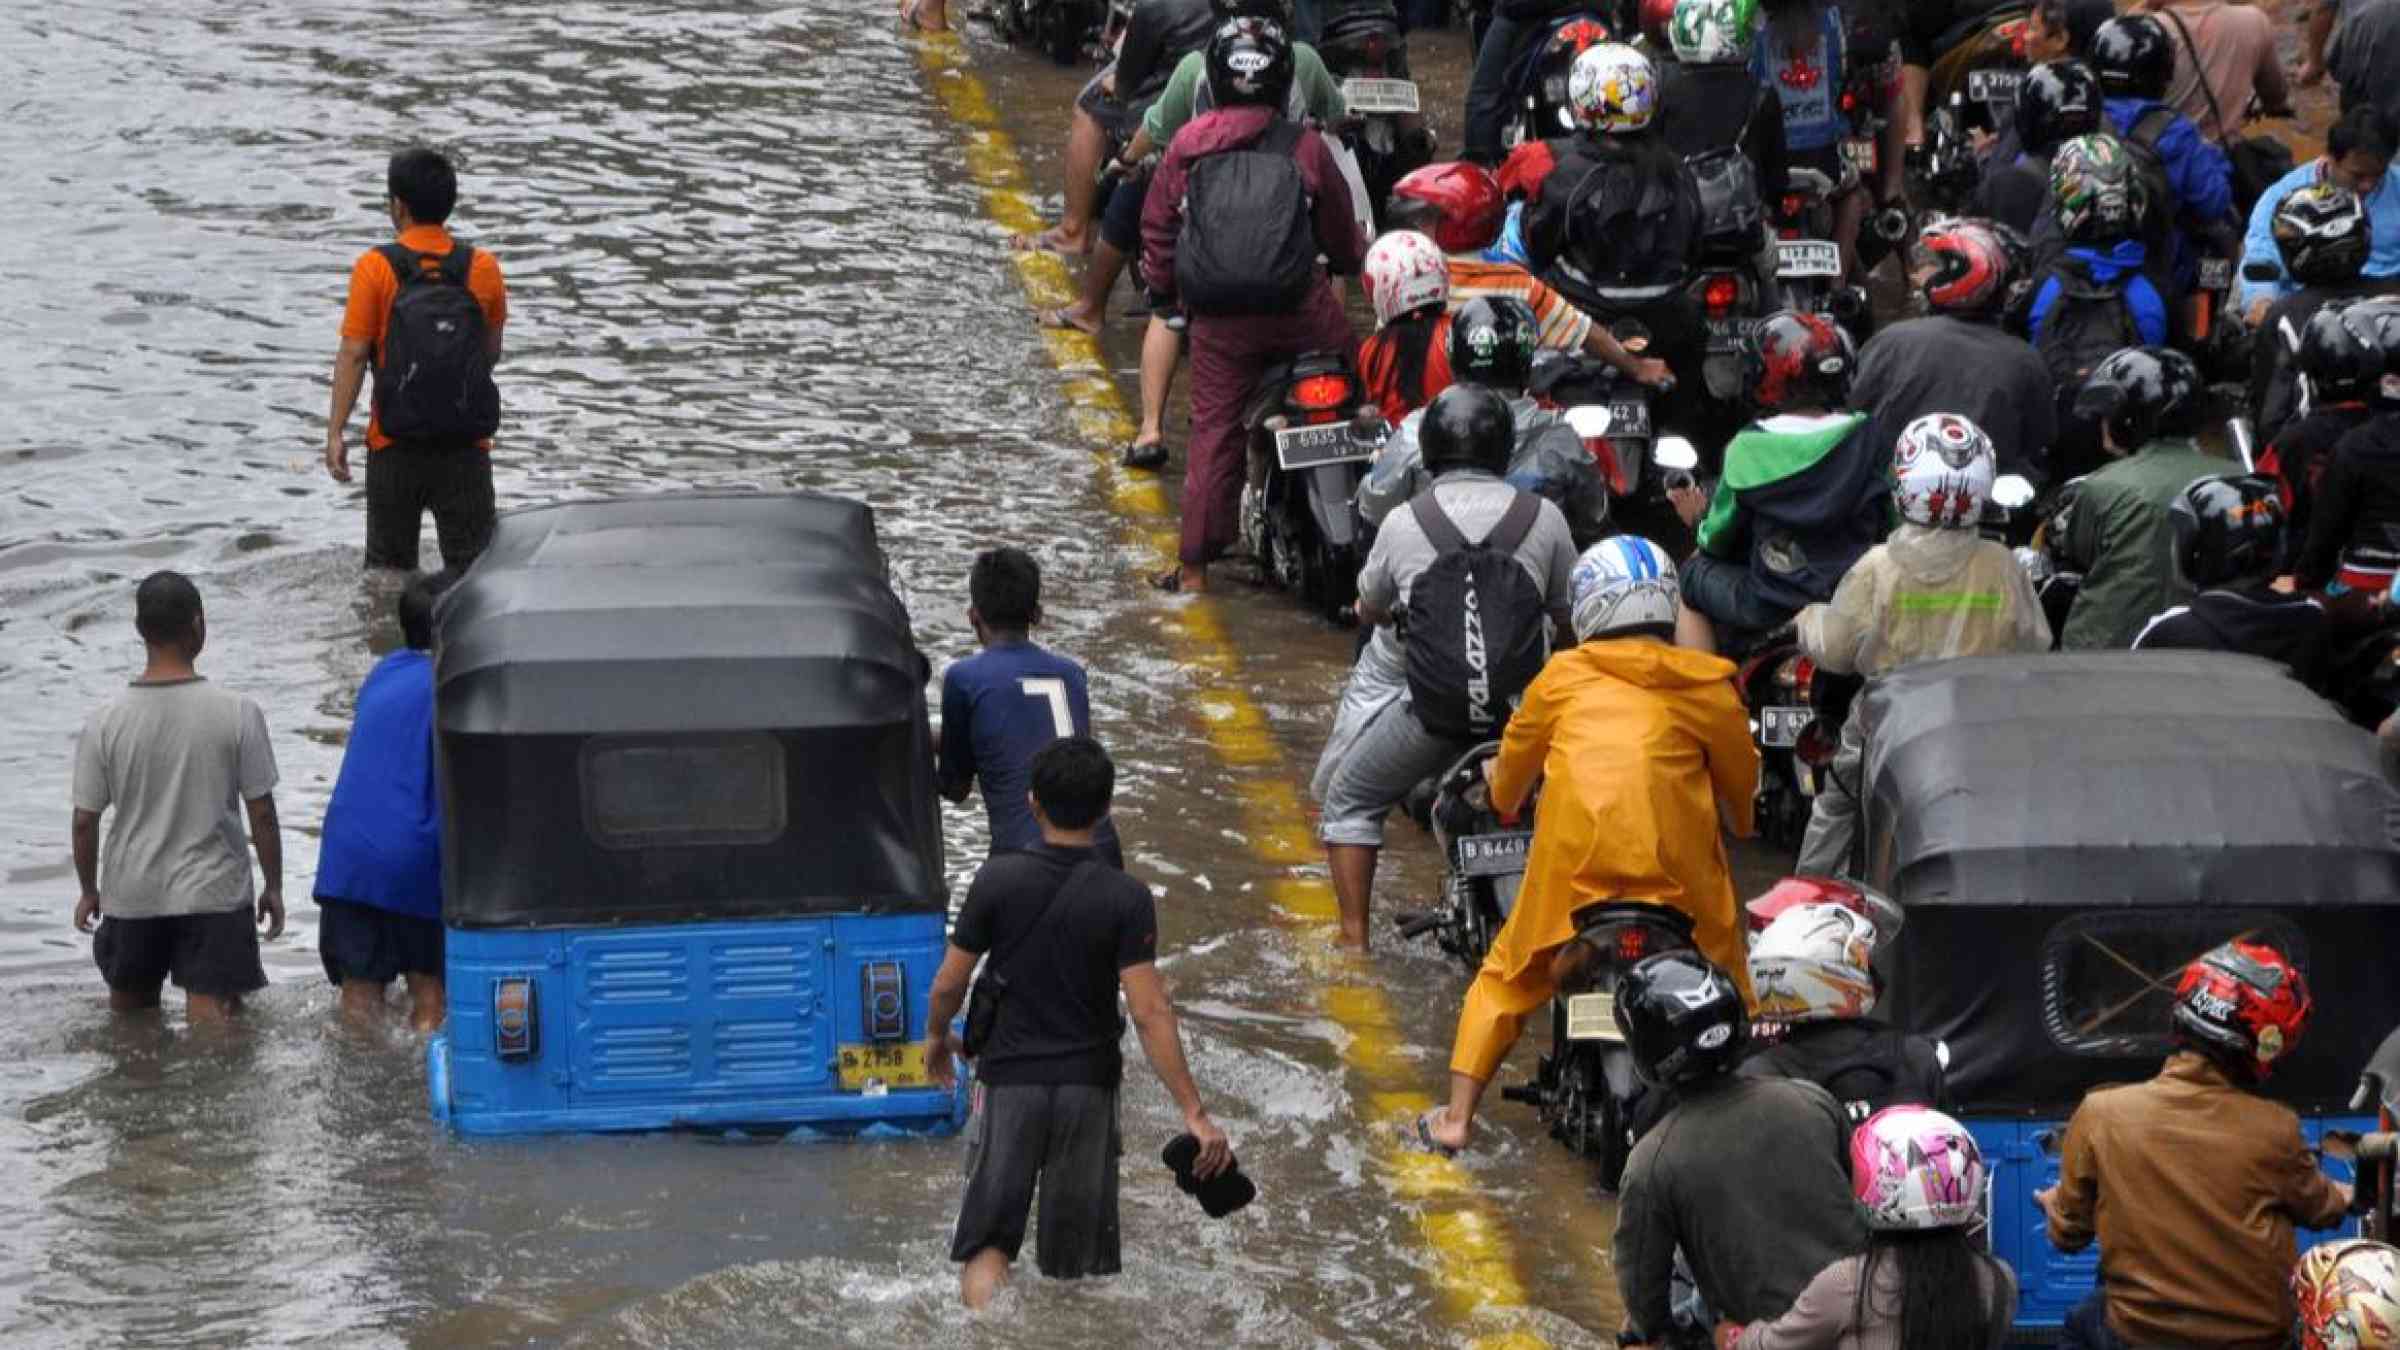 Floods in Jakarta, Indonesia (2015). dani daniar/Shutterstock